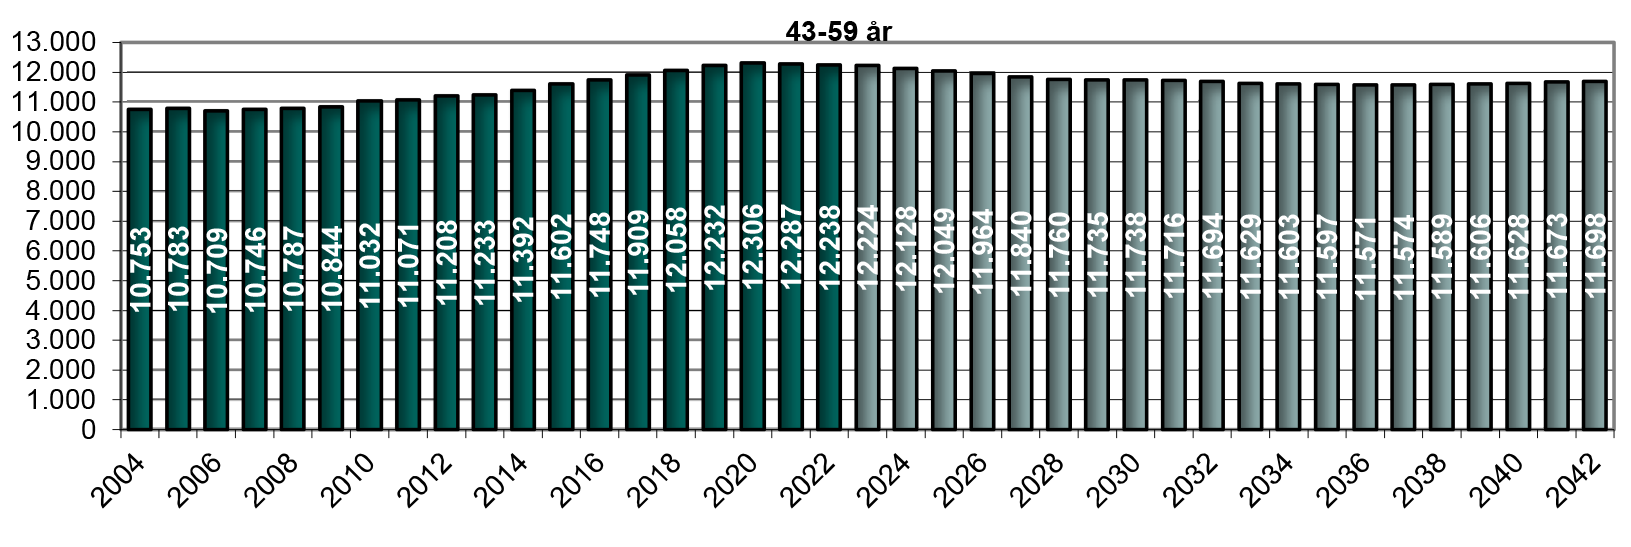 Figur 10. Hidtidig og forventet antal 43-59 årige (1. januar)